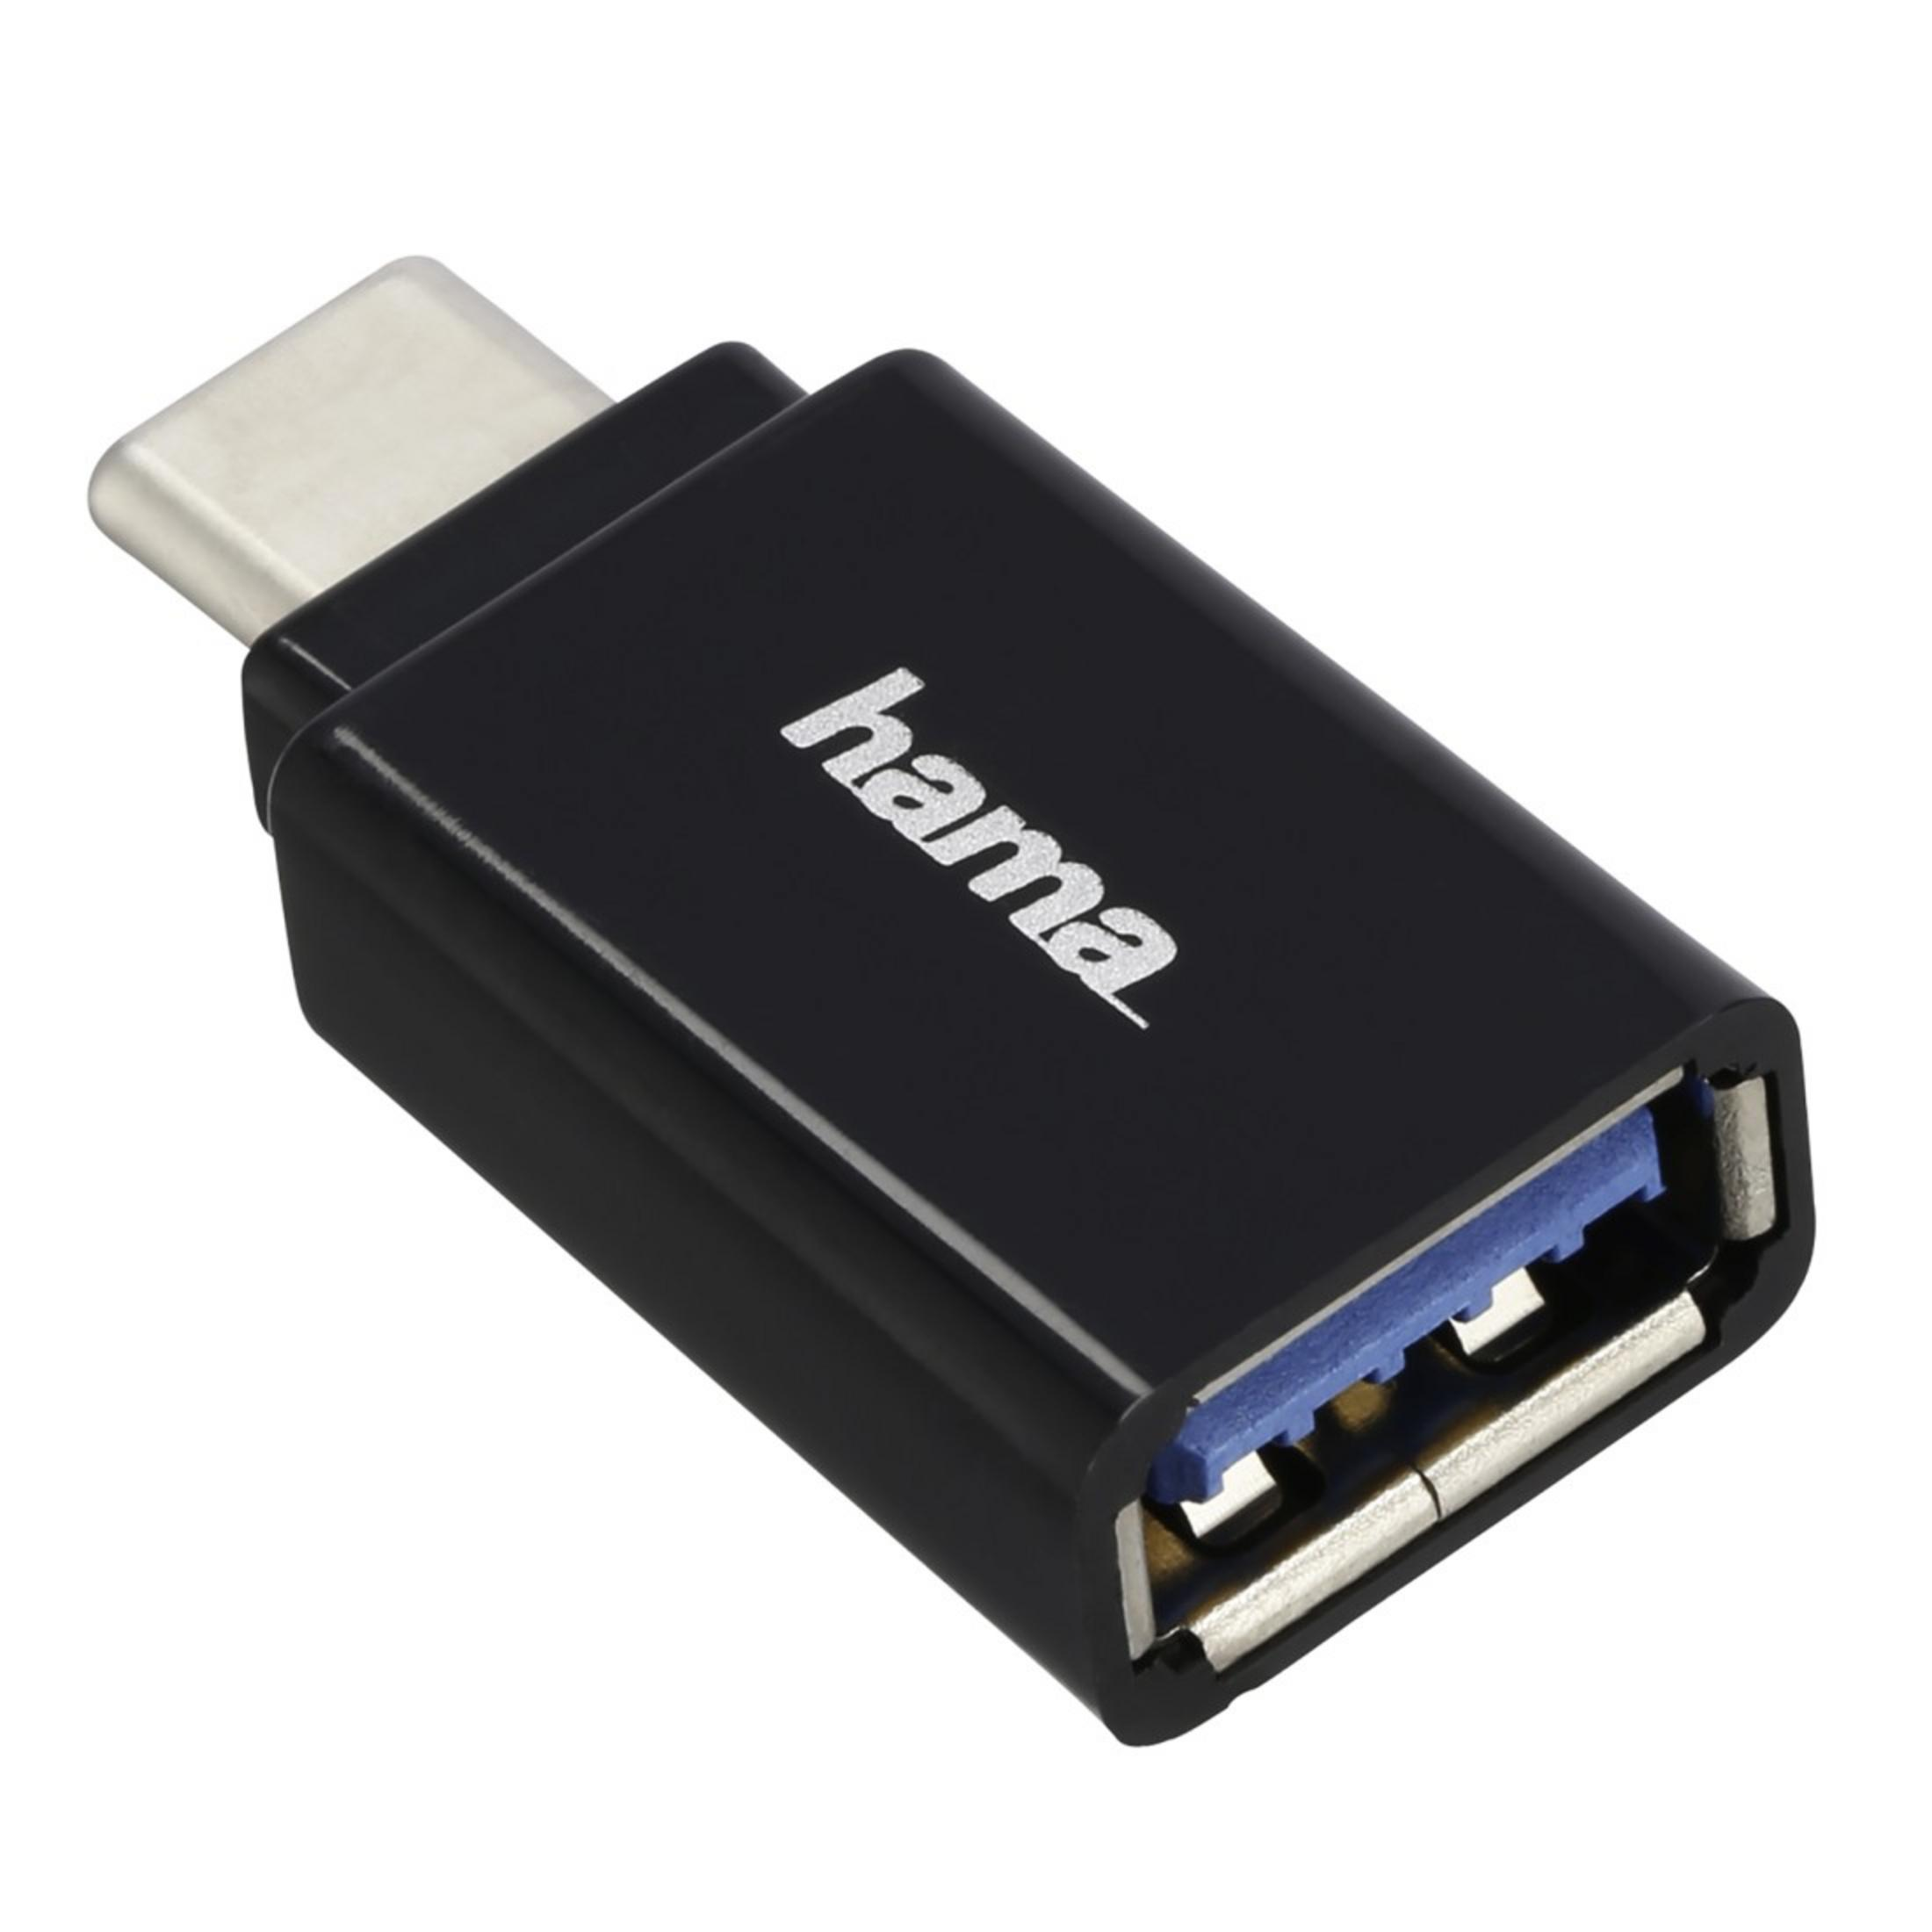 STECKER-USB HAMA USB KUPP, ADAP.C Adapter A 135721